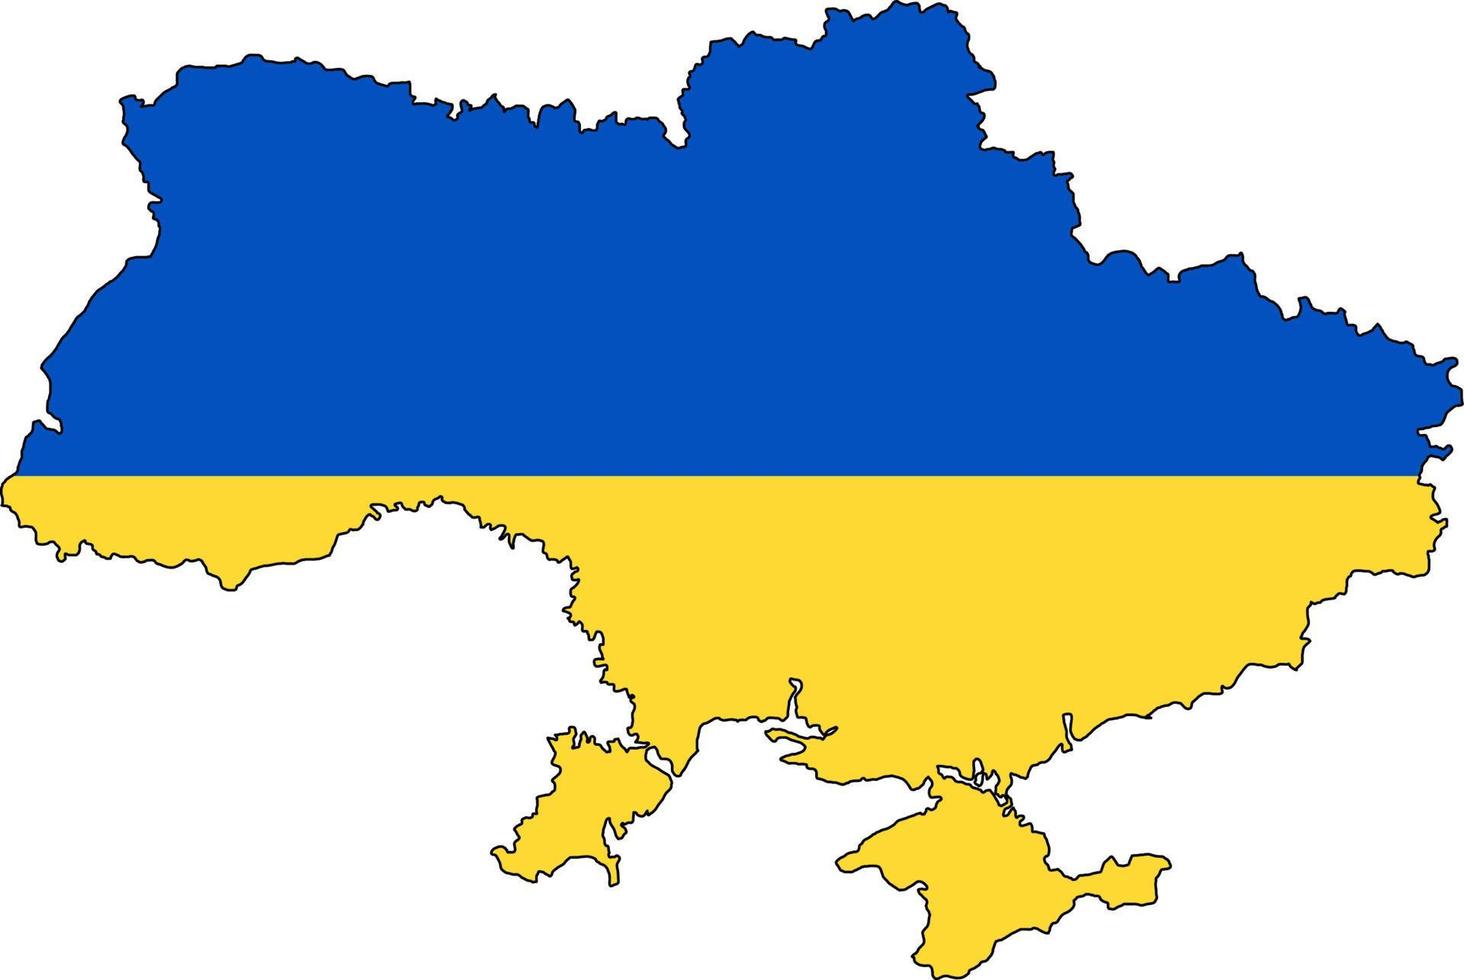 ukrainska landskarta. ukrainska flaggans färger. territorium gränsar till crimea. blå och gul vektorillustration. vektor